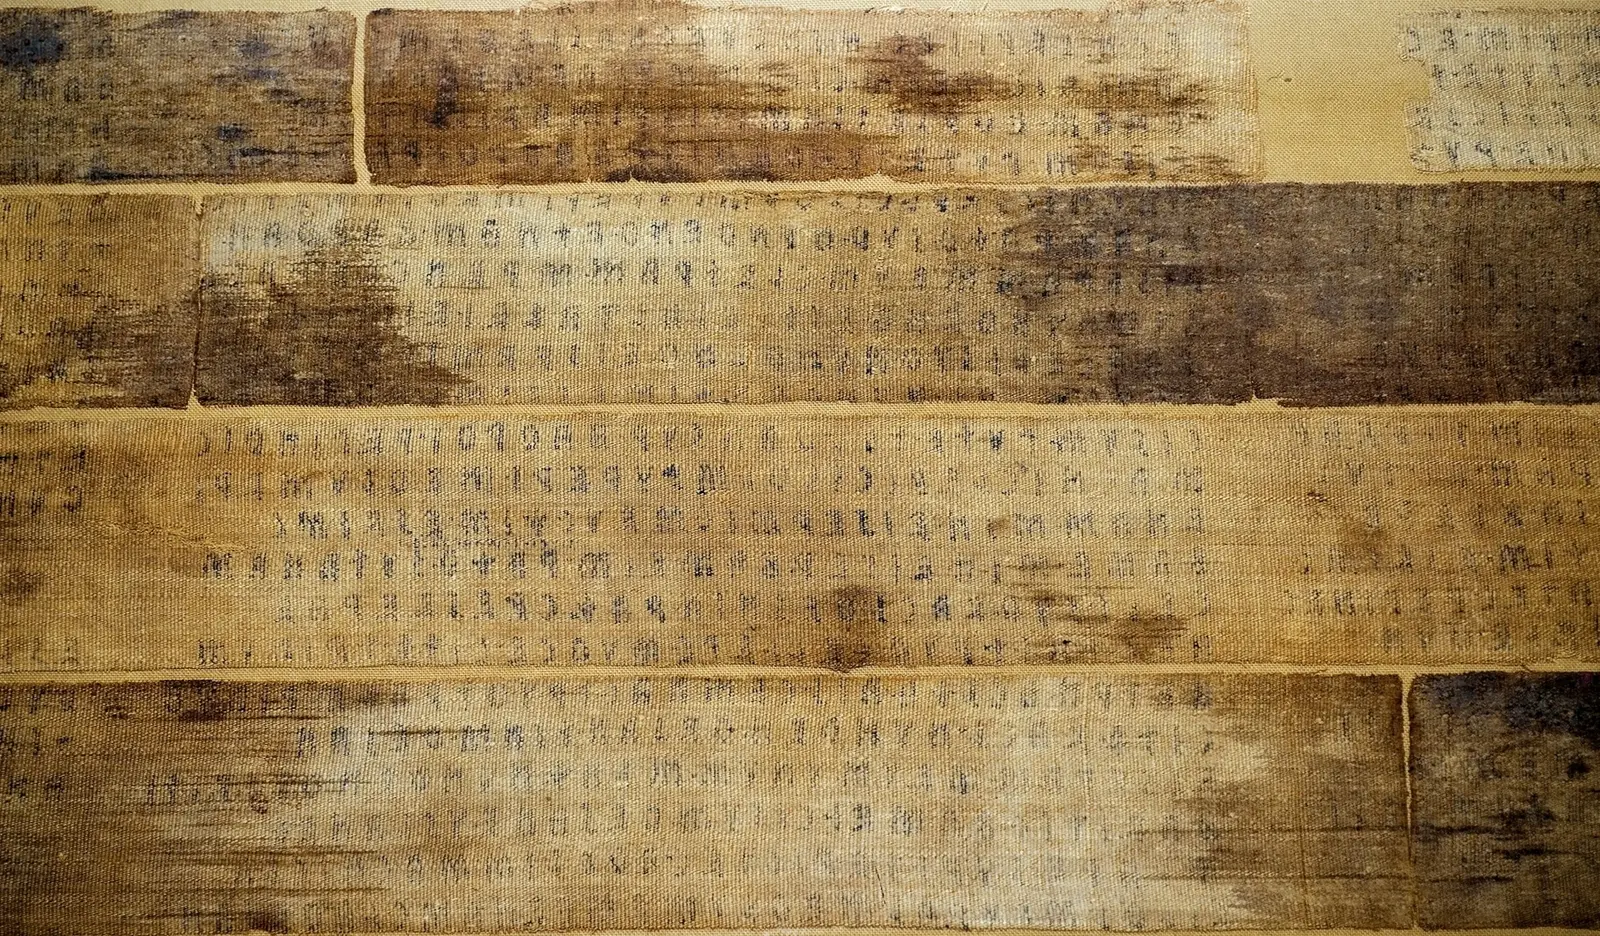 Des ecrits etrusques composent le livre de lin de zagreb plus tard dechire pour servir de bandelettes a une momie egyptienne